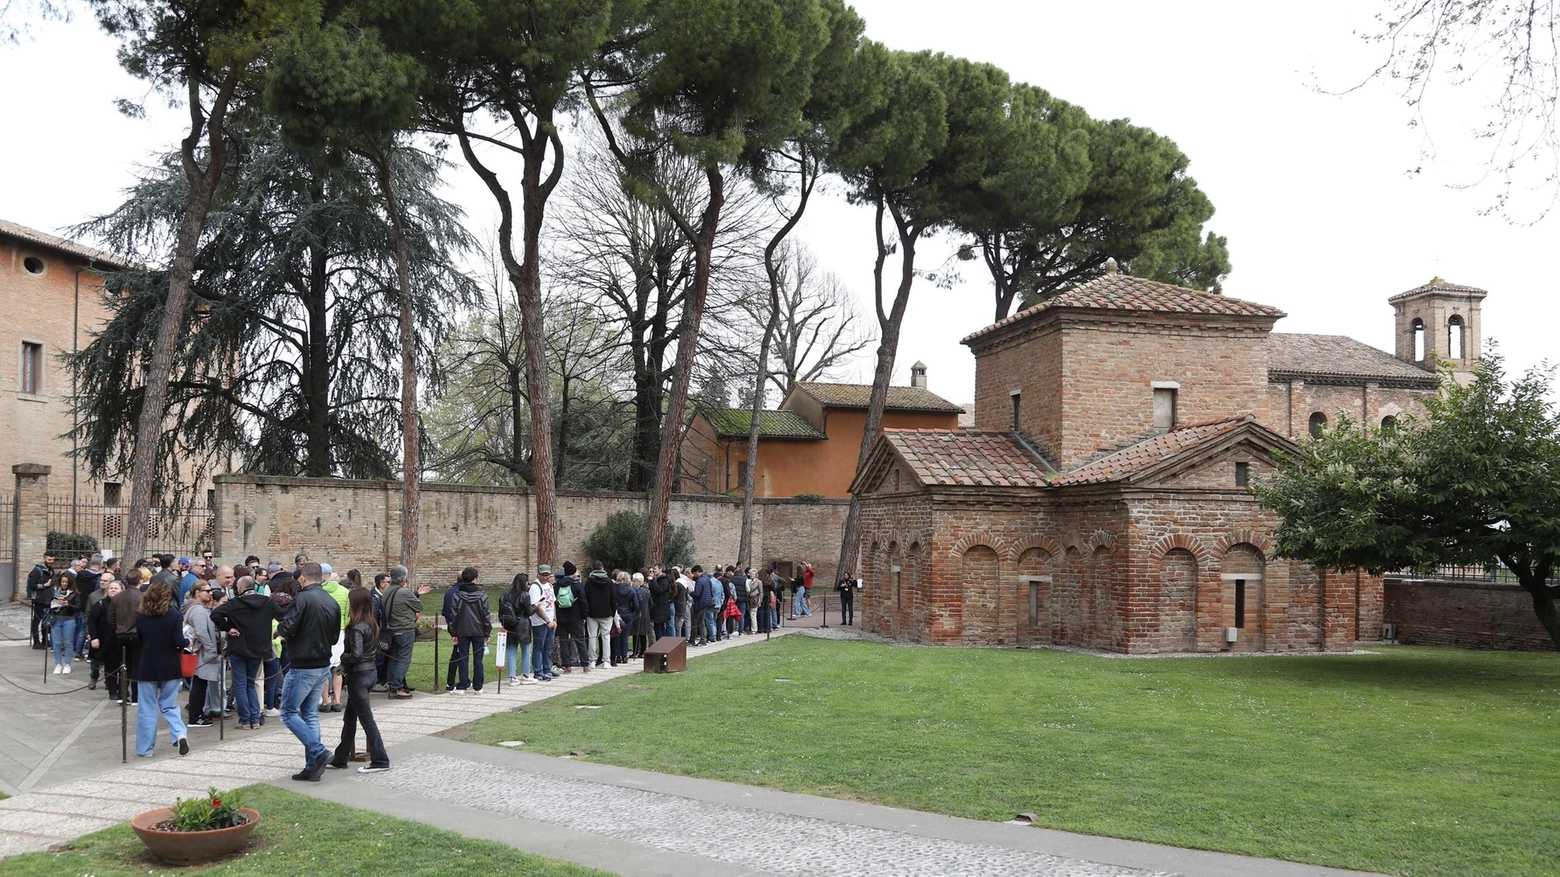 Pasqua a Ravenna, grande affluenza. In 2500 per la mostra di Salgado al Mar